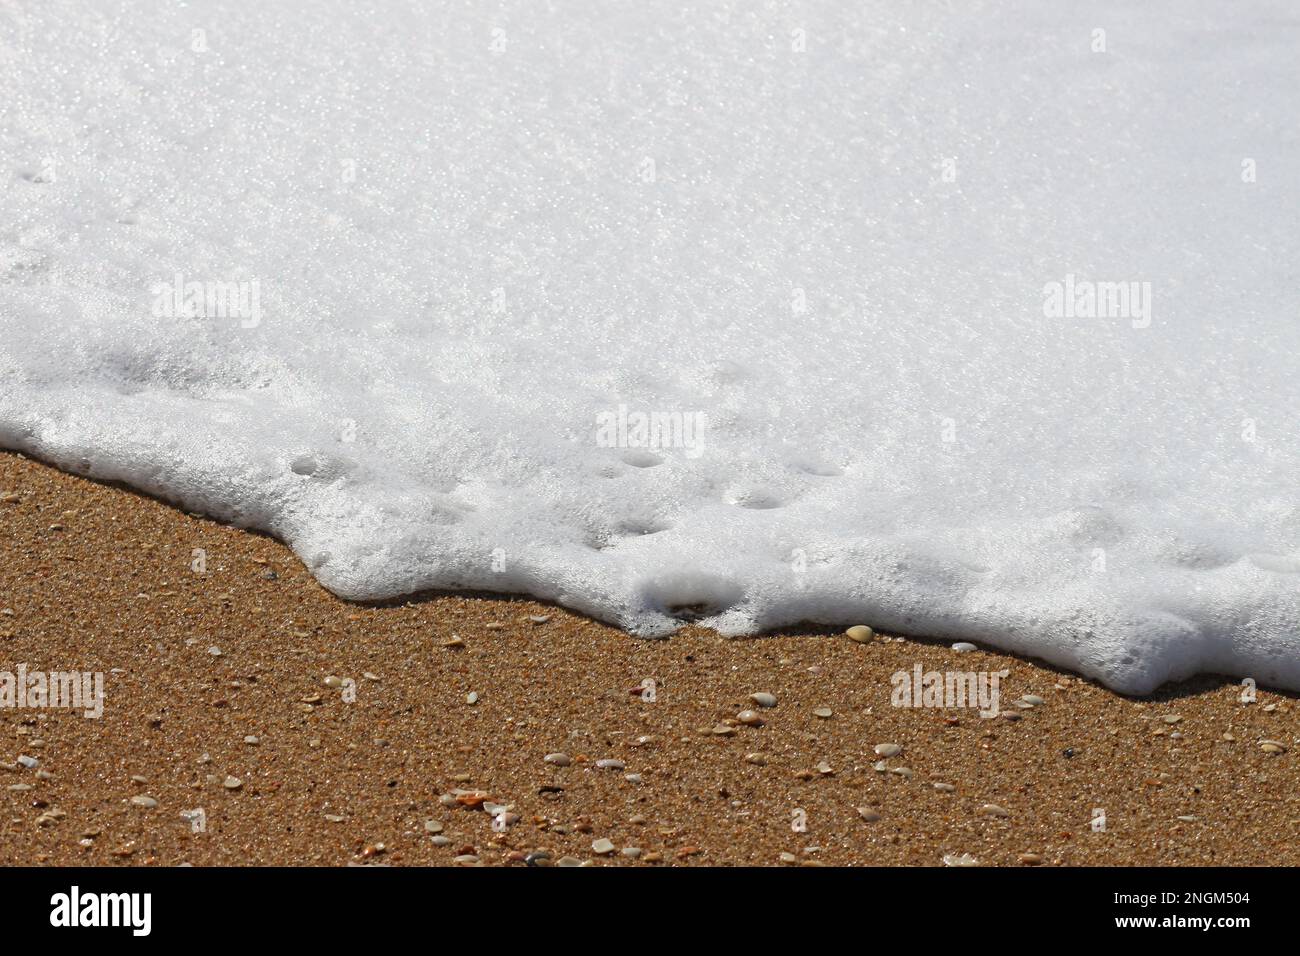 Le onde quando colpiscono la sabbia sulla spiaggia. La schiuma che dipinge immagini astratte e belle. È la natura in tutte le sue forme. Foto Stock